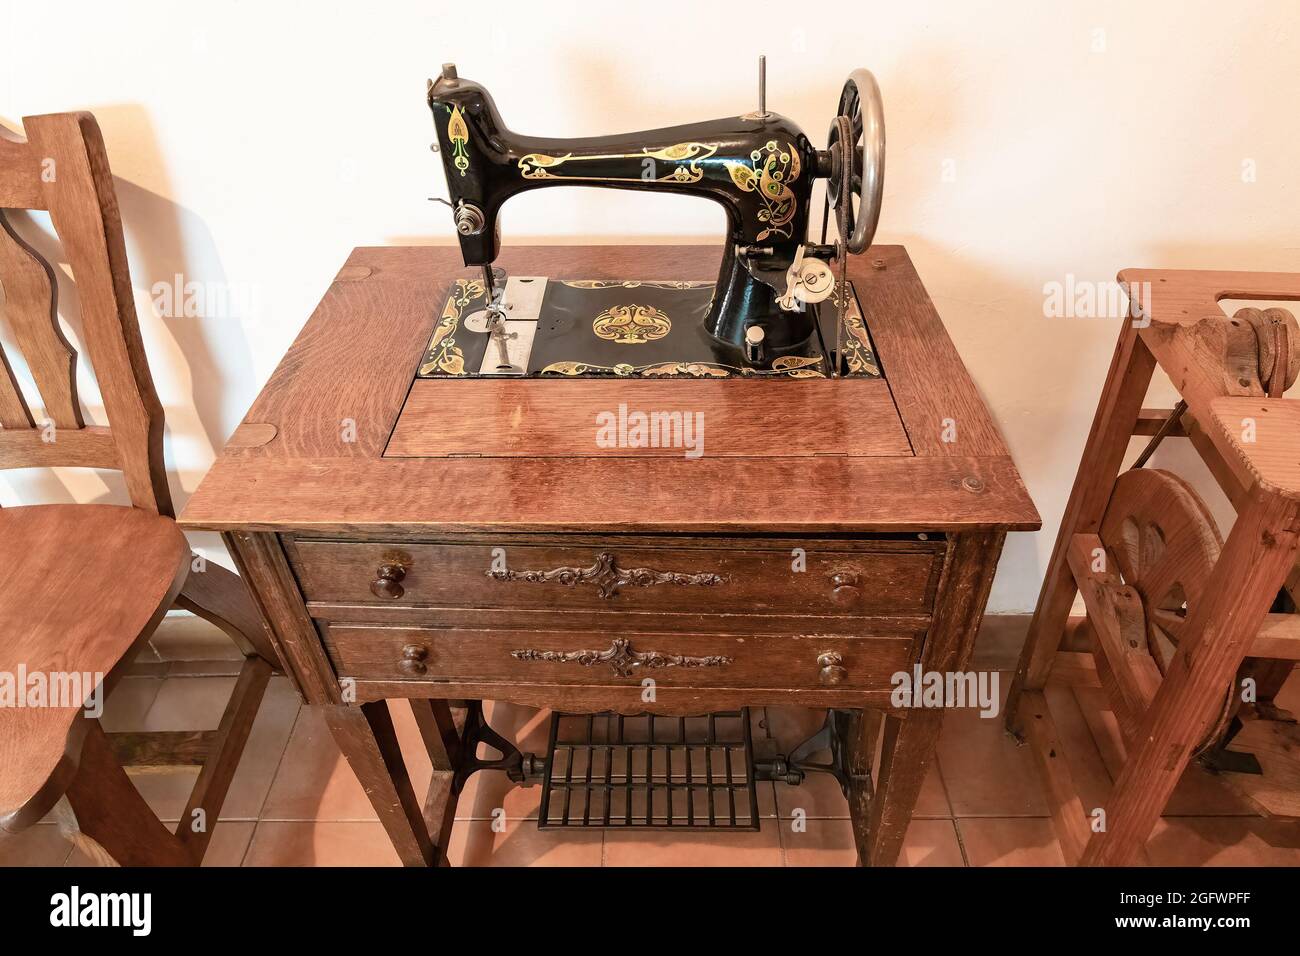 Ancienne machine à coudre dans un mobilier en bois Photo Stock - Alamy